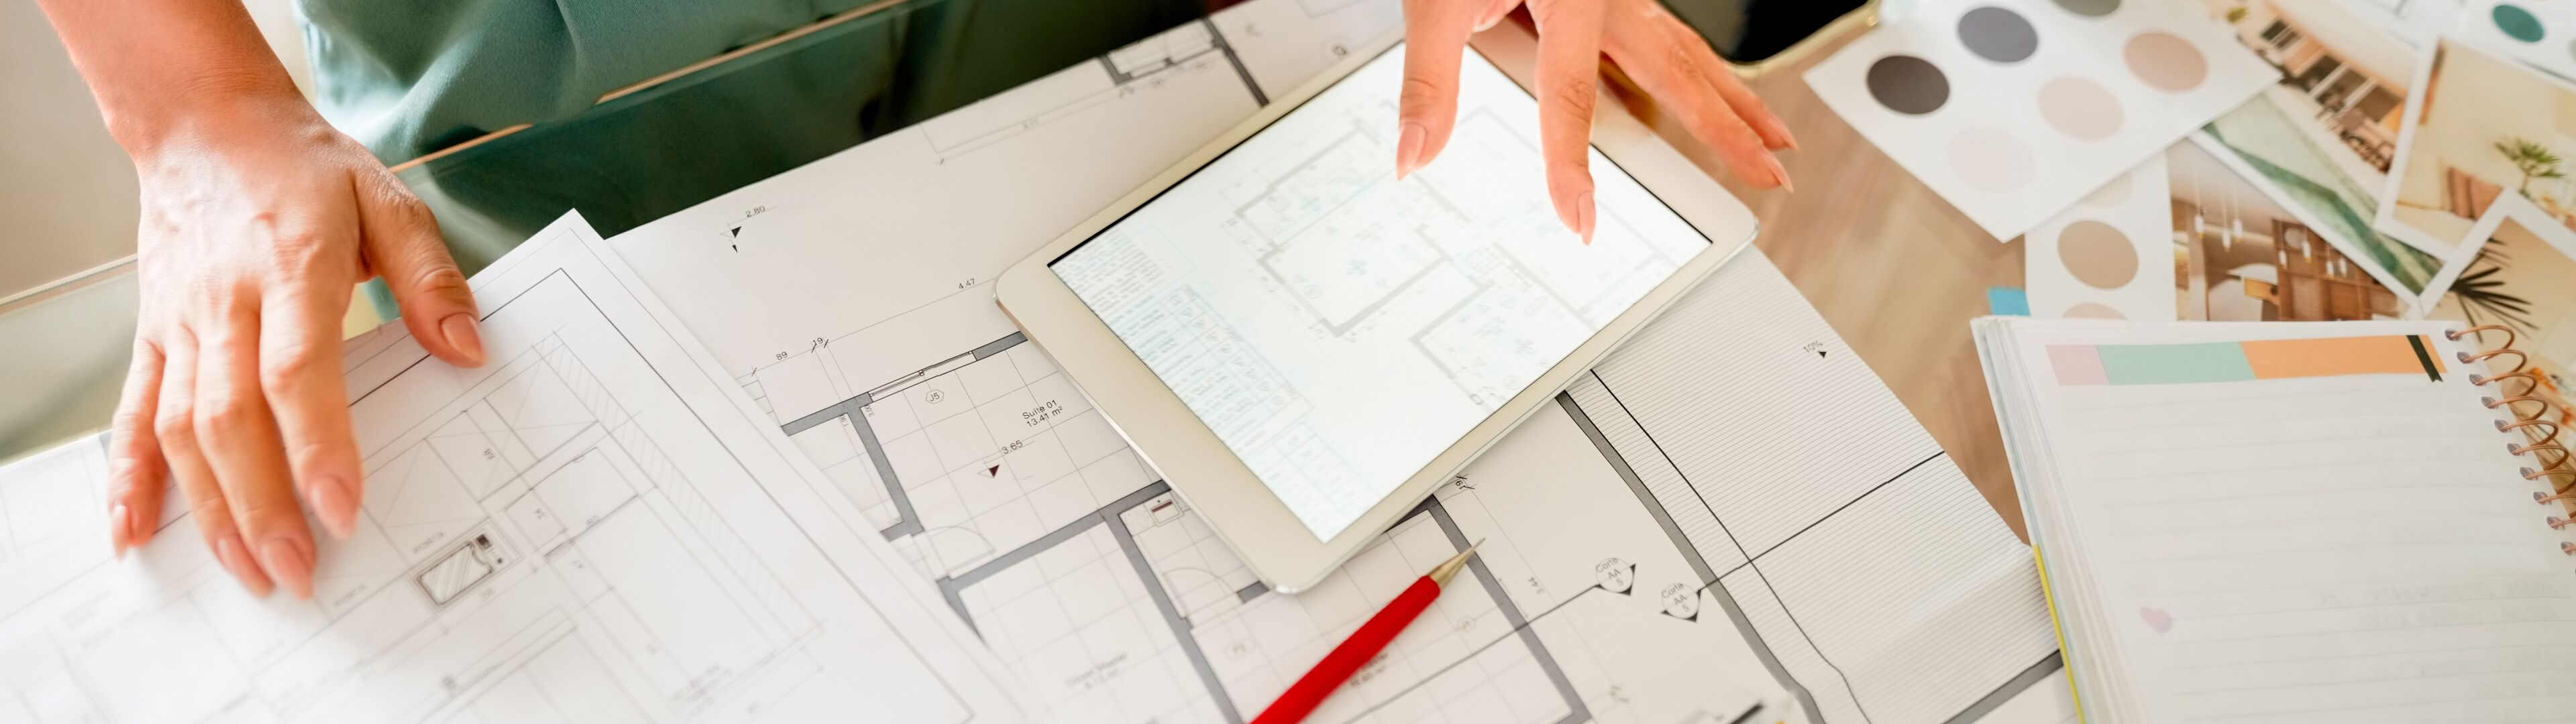 Un(e) professionnel(le) examine des plans architecturaux sur une tablette, sur un bureau encombré de dessins de conception et de palettes de couleurs.